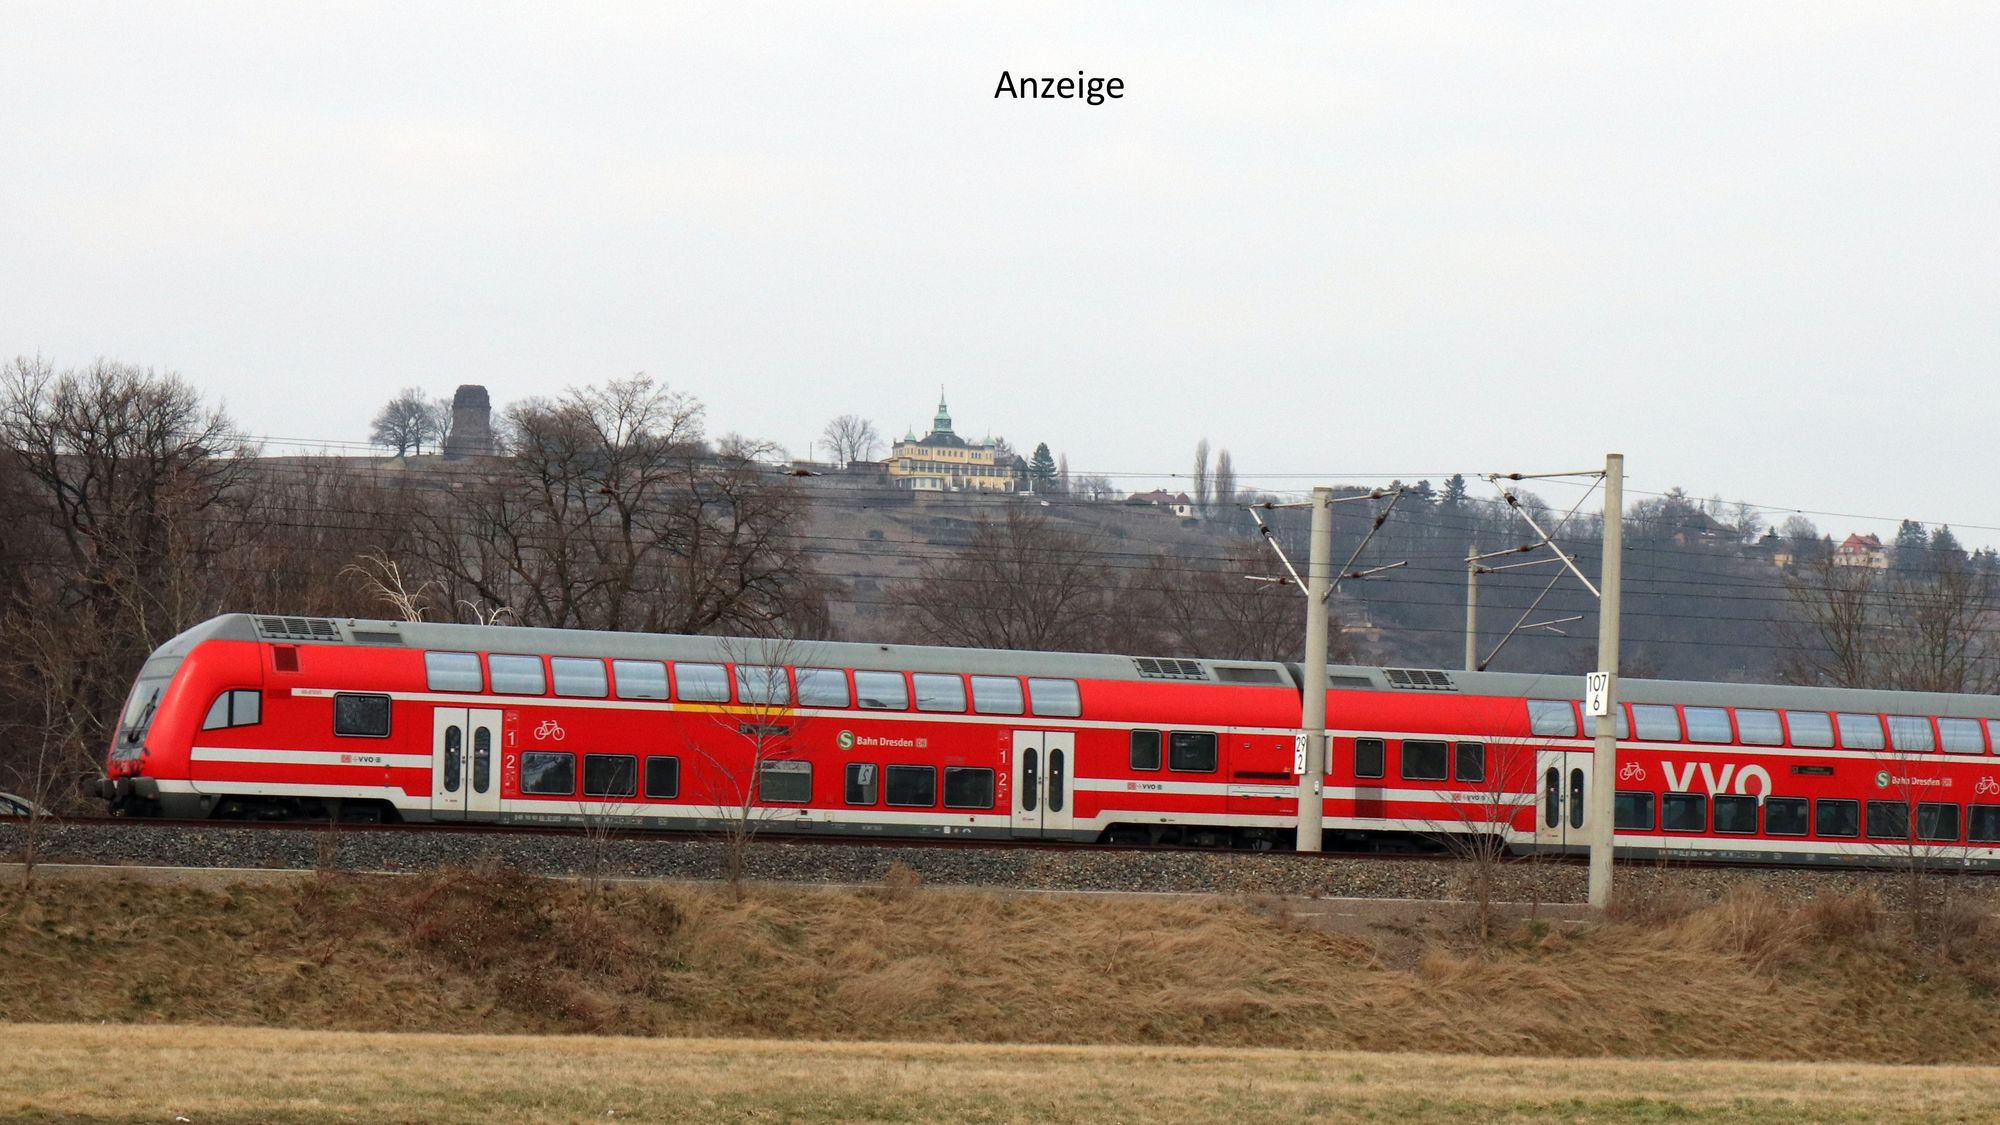 S-Bahn Anzeige